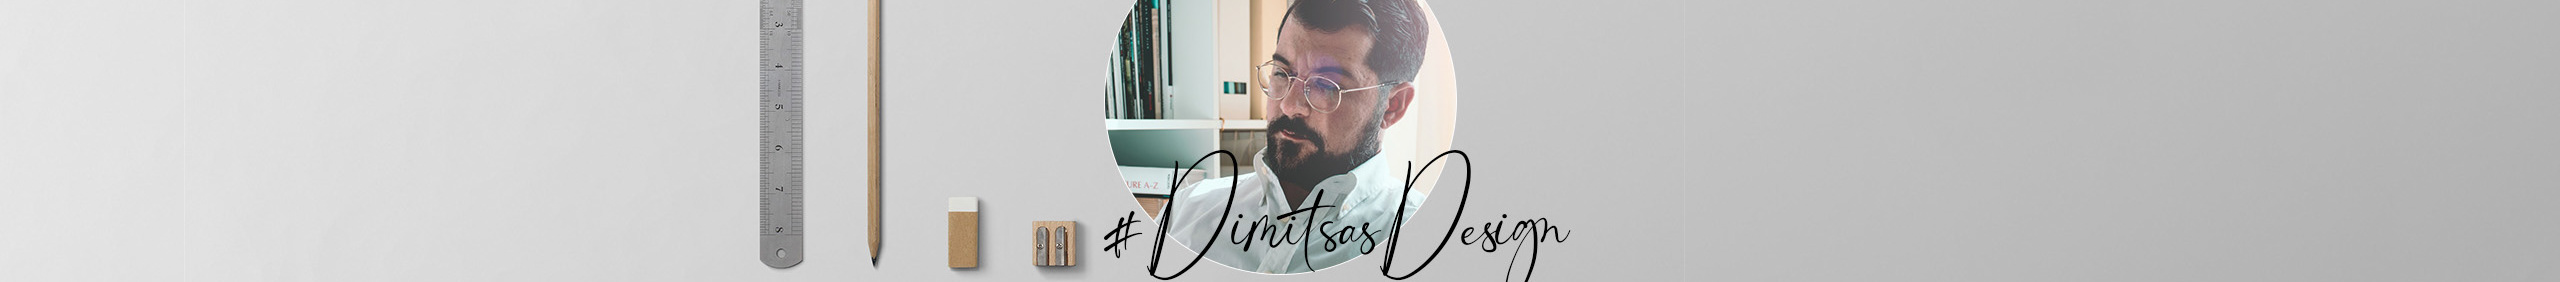 Giorgio Dimitsas's profile banner